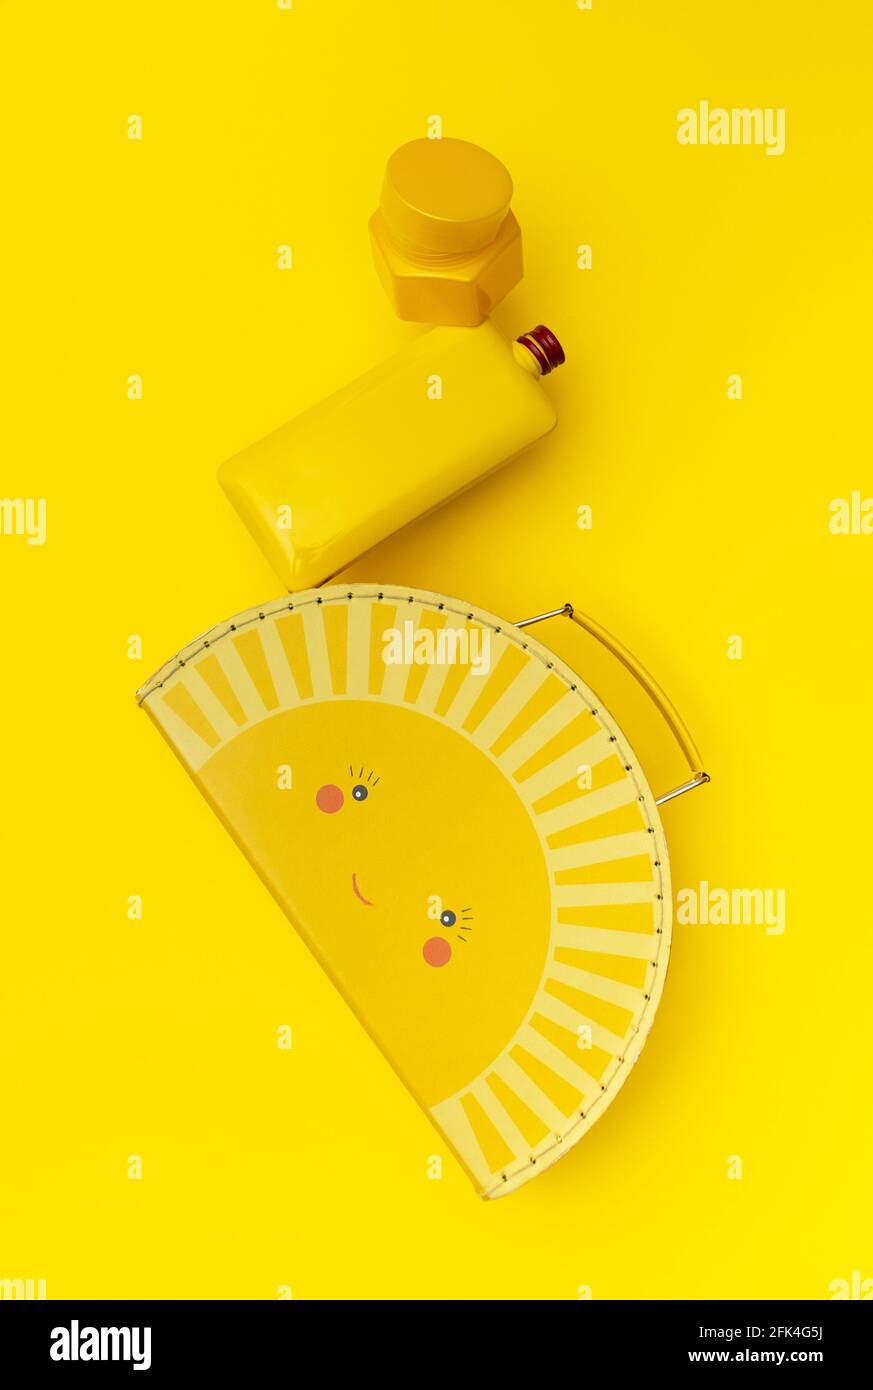 Gelbe Gehäuse-, Flaschen- und Behälterkonstruktion schwebt auf gelbem Hintergrund. Kreative Draufsicht, schwebend. Stockfoto